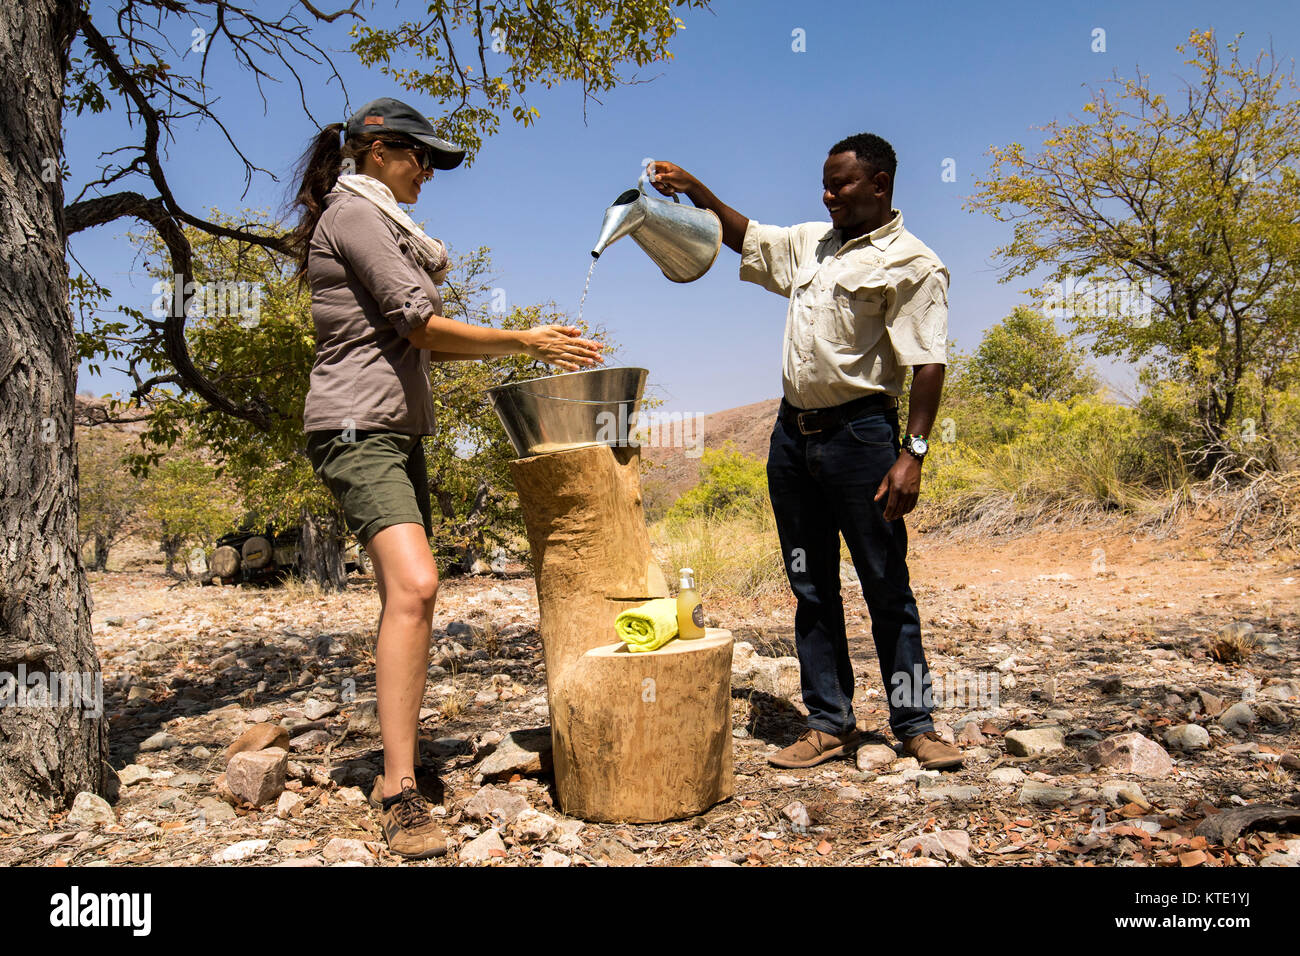 Frau waschen ihre Hände in Zinn Becken - Huab unter Leinwand, Damaraland, Namibia, Afrika Stockfoto